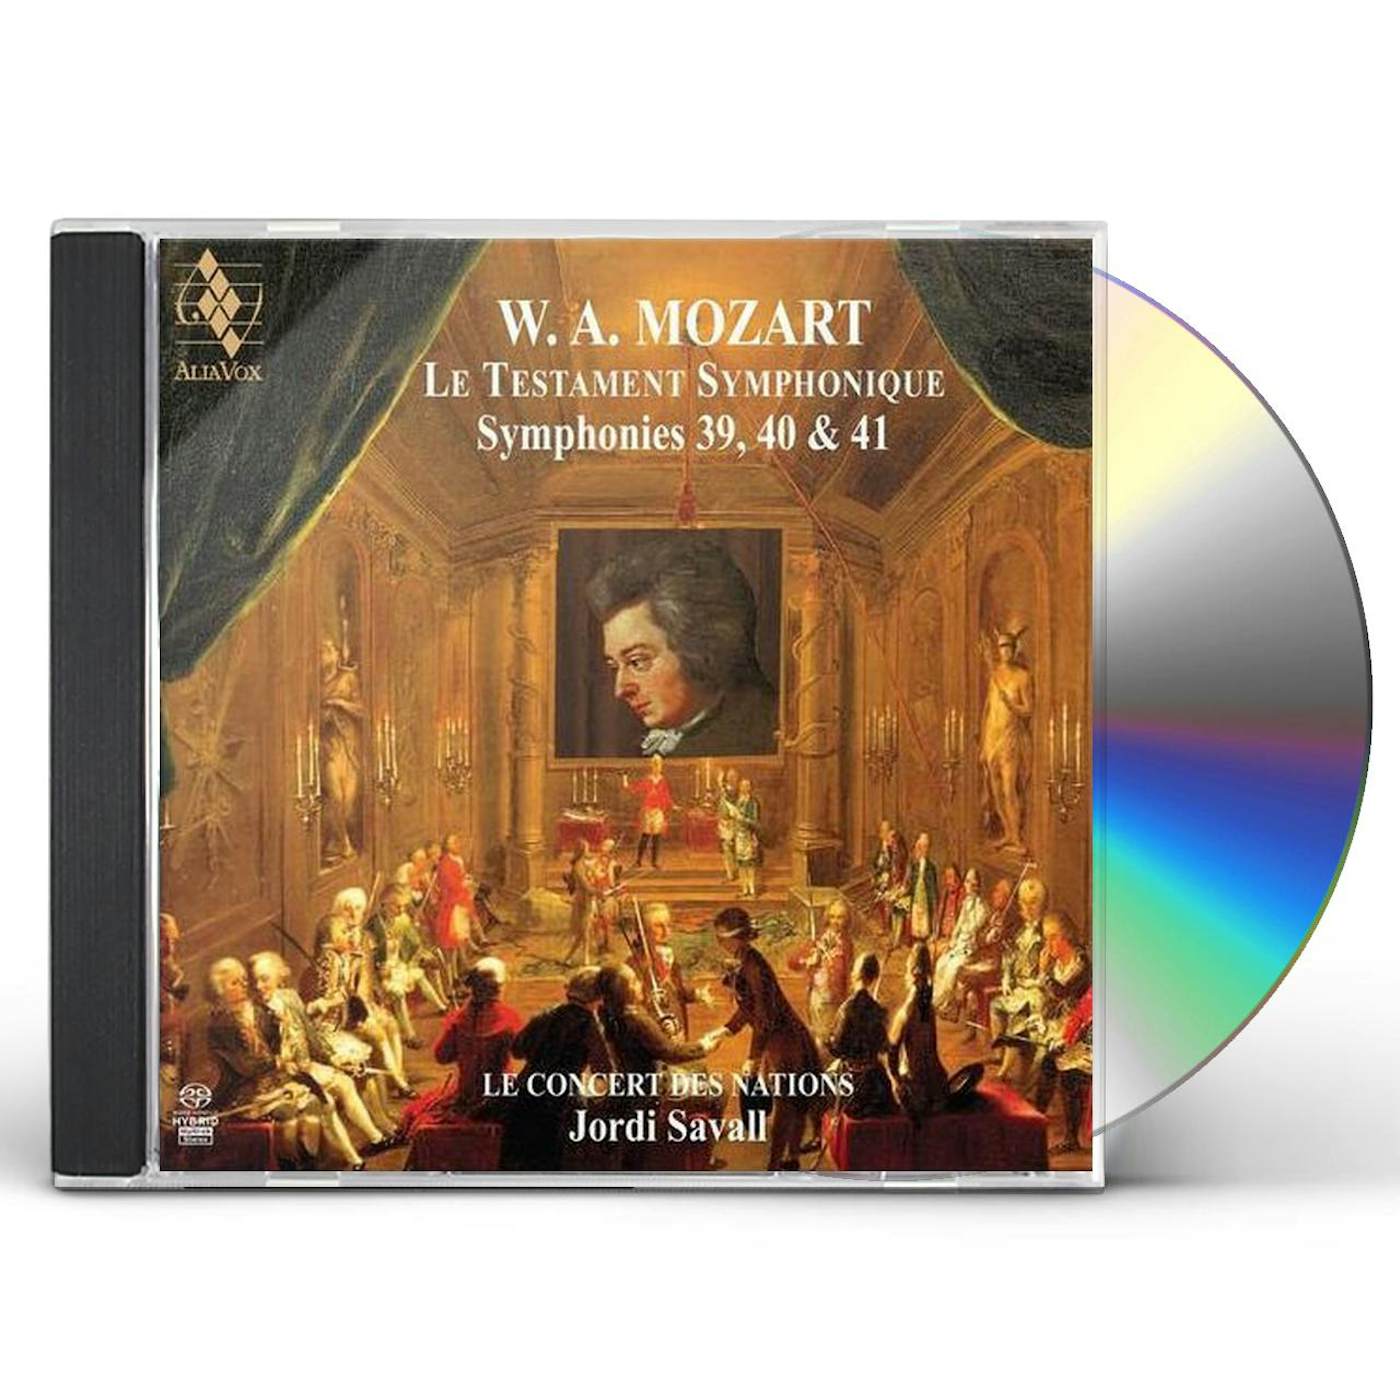 Jordi Savall MOZART: SYMPHONIES NO.39 40 & 41 CD